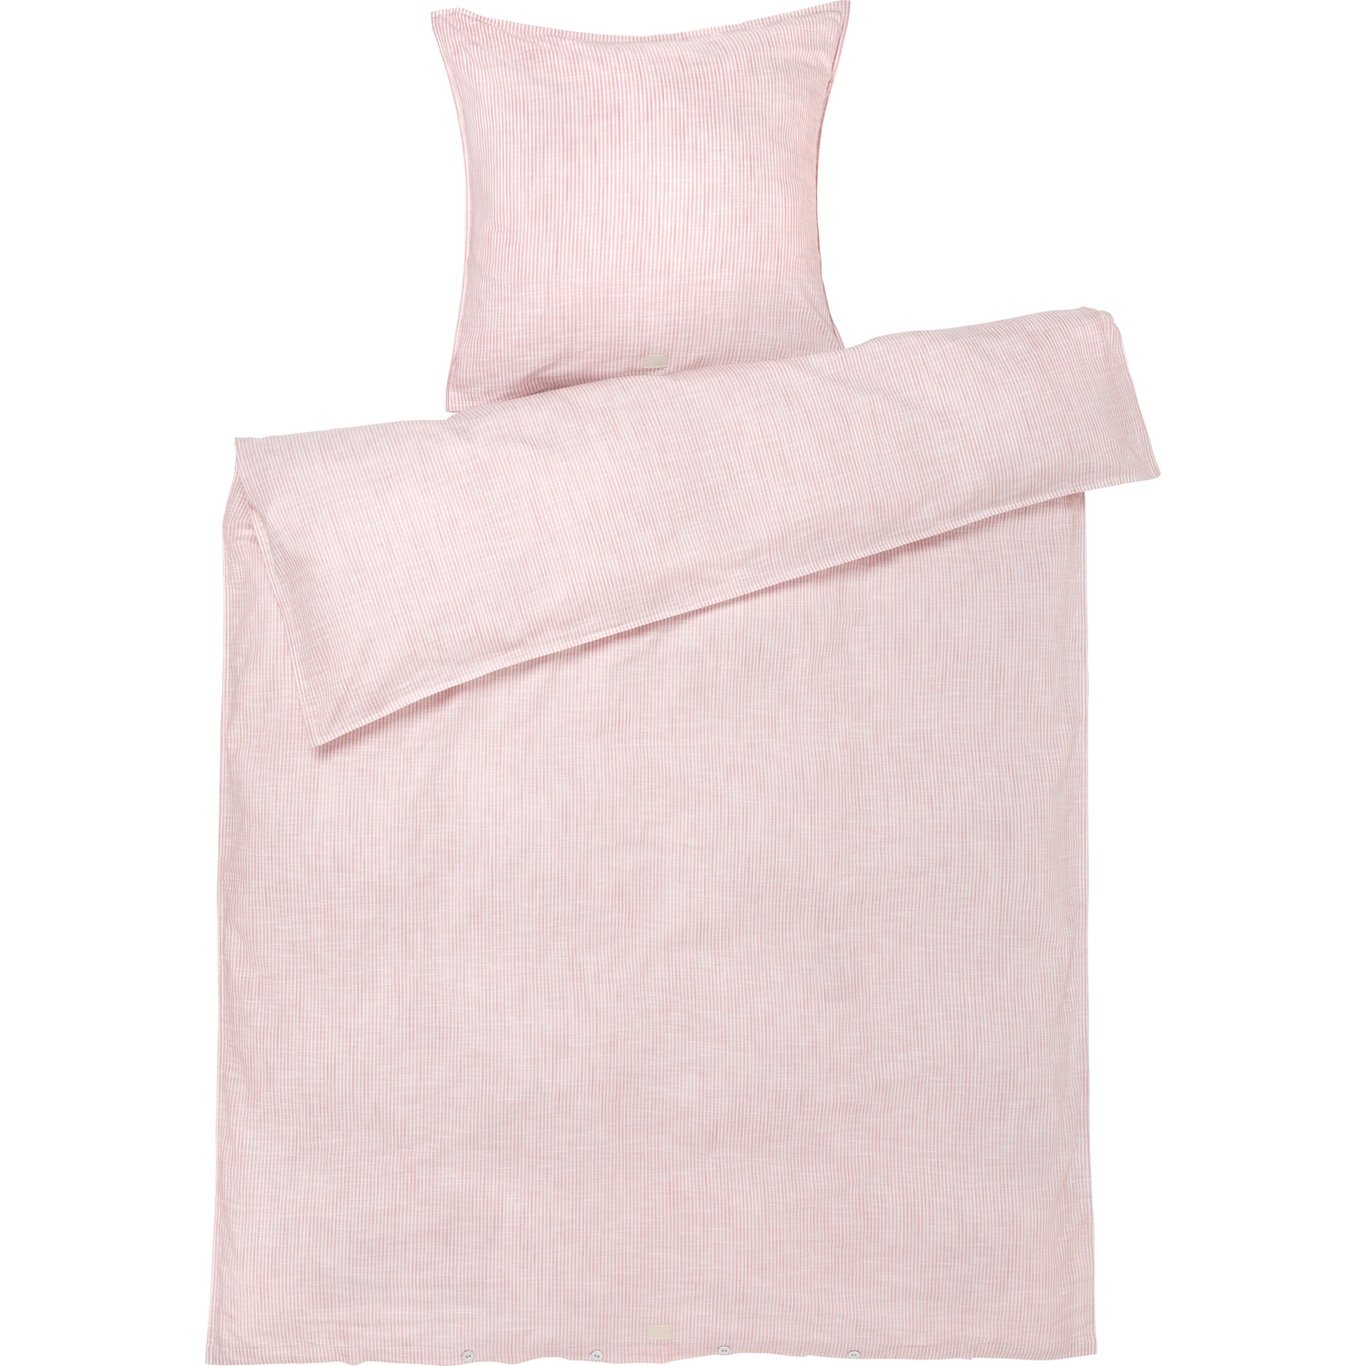 Monochrome Lines Duvet Cover Set 150x210 + 50x60 cm, Pink